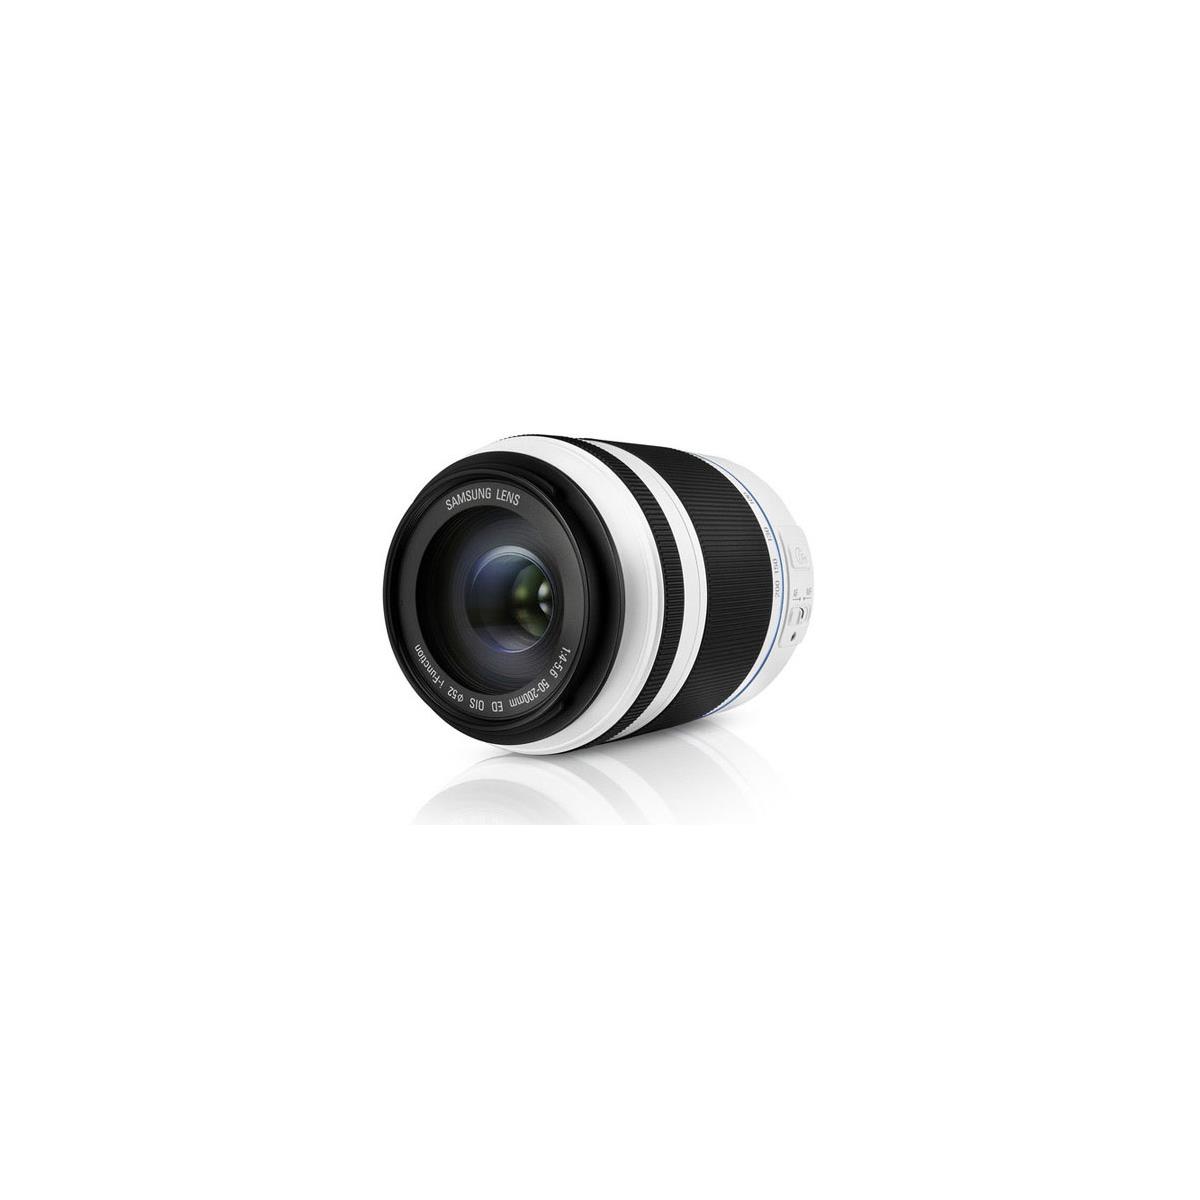 Image of Samsung 50-200mm f/4.0-5.6 ED OIS II Lens